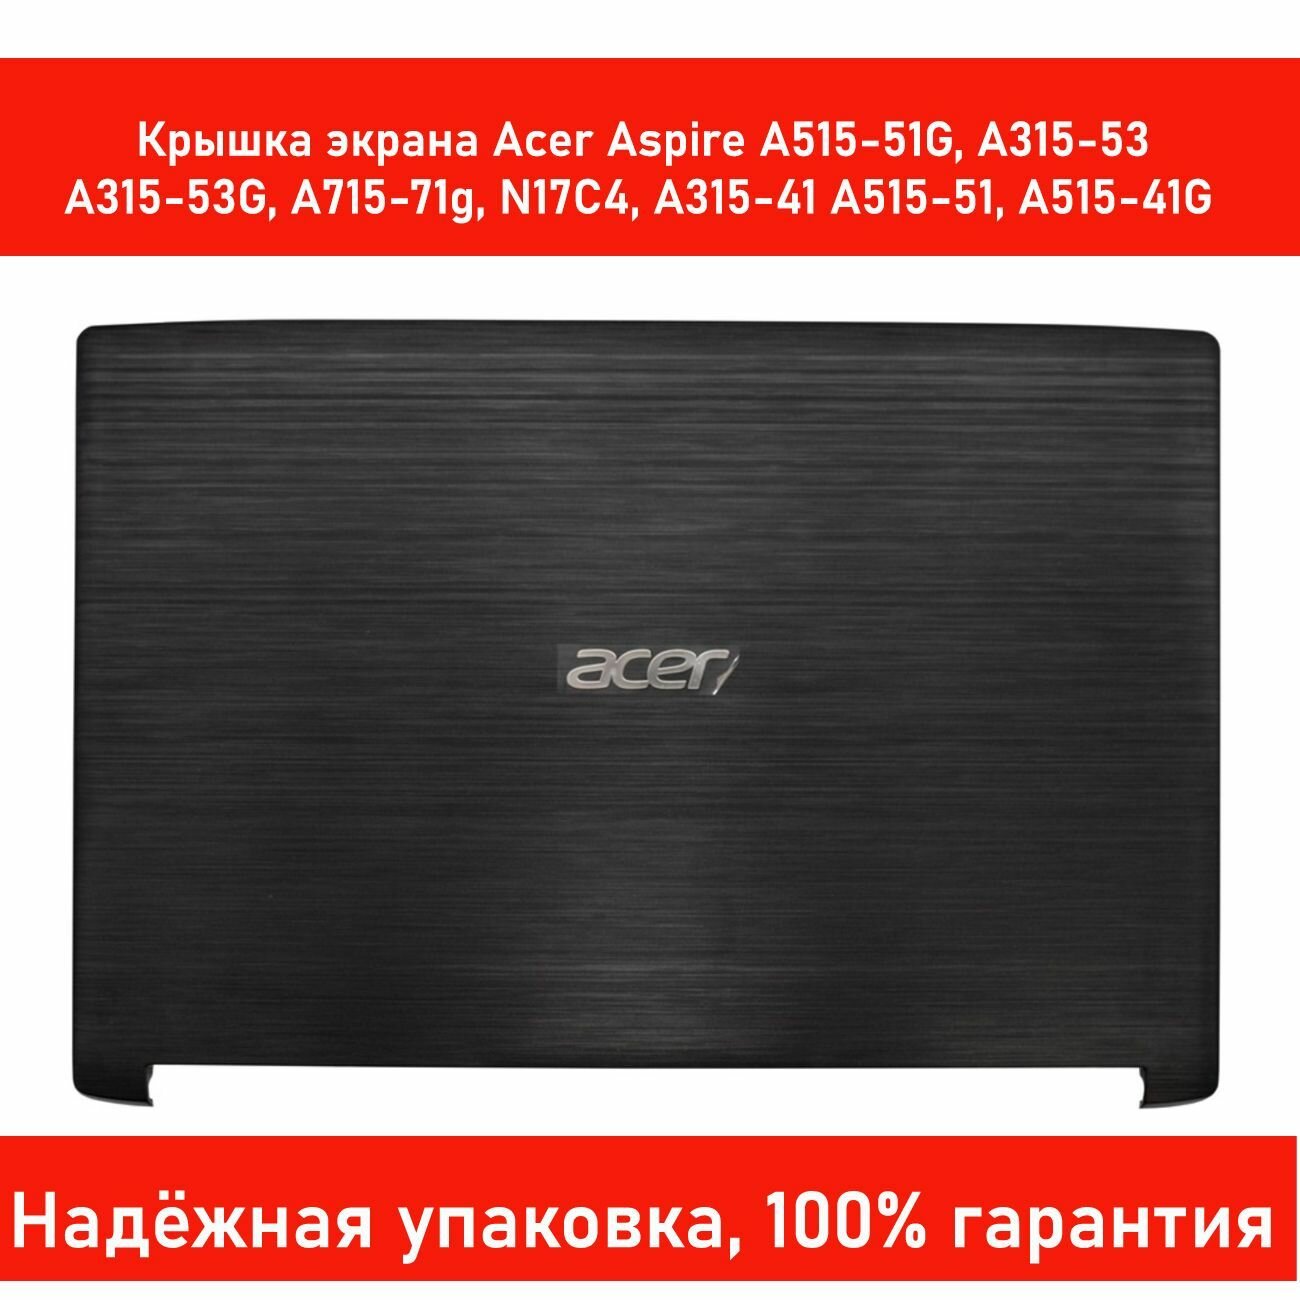 Крышка Acer Aspire A515-51G, A315-53, A315-53G, A715-71g, N17C4 (Корпус матрицы экрана ноутбука)